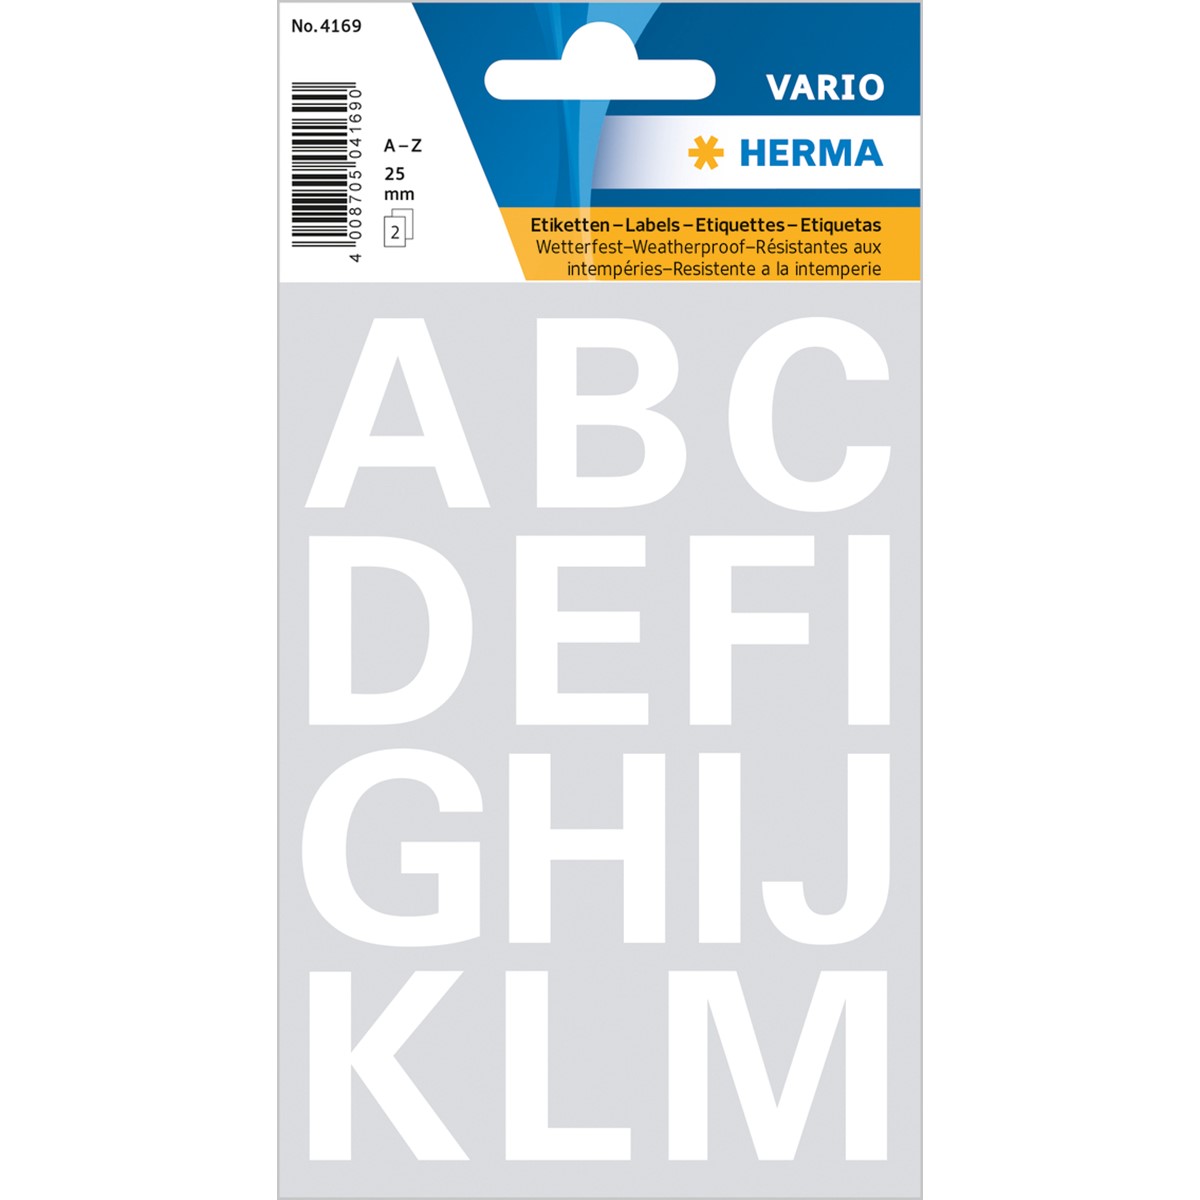 HERMA 4169 - Buchstaben Etiketten, weiß, 25 mm, 2 Blatt